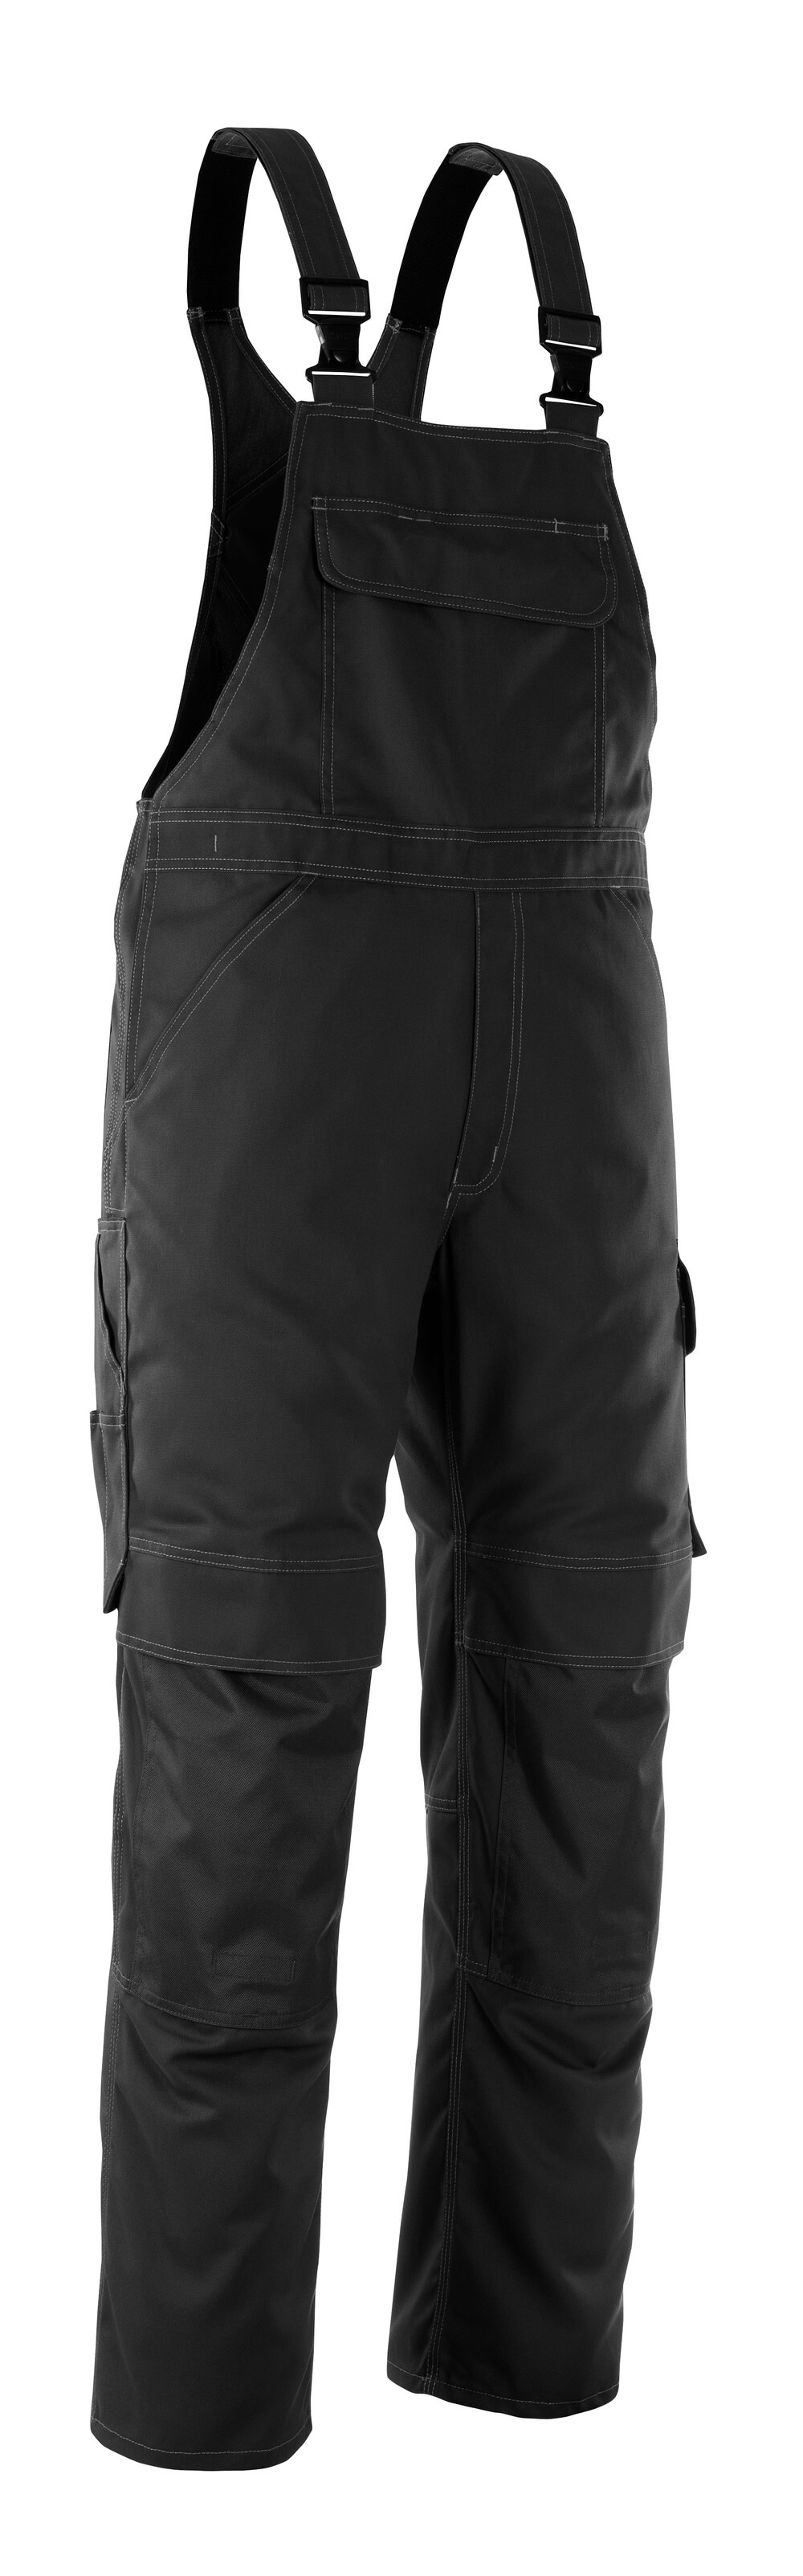 MASCOT® INDUSTRY Latzhose mit Knietaschen »Richmond« Gr. 76/C46, schwarz - kommt direkt von HUG Technik 😊